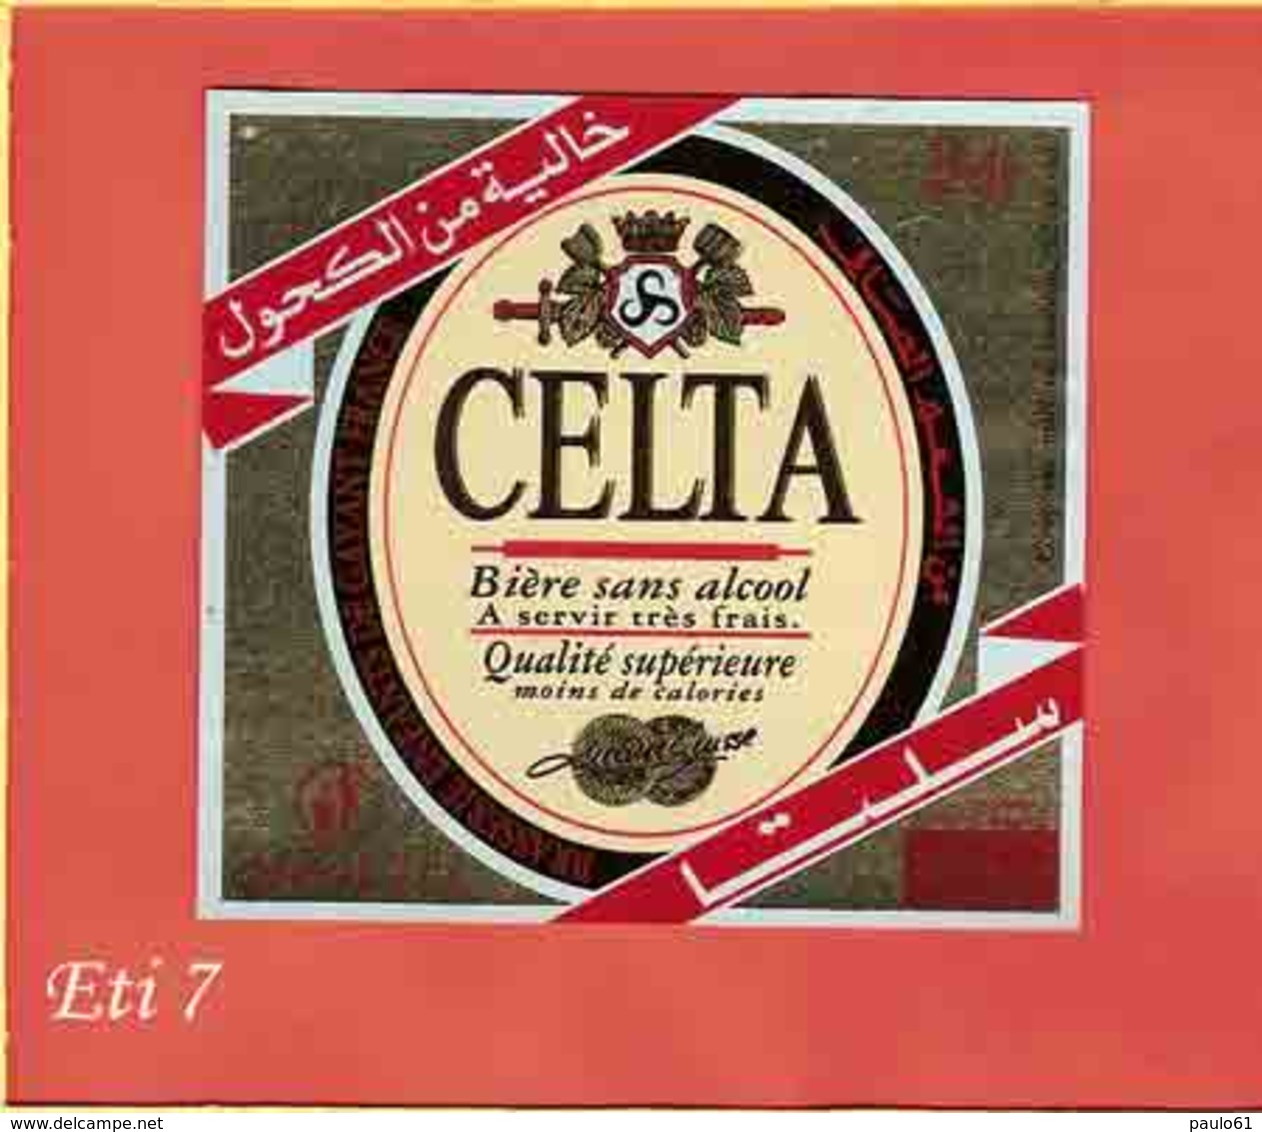 Etiquette De Biere :Biere Sans Alcool CELTA - Bière